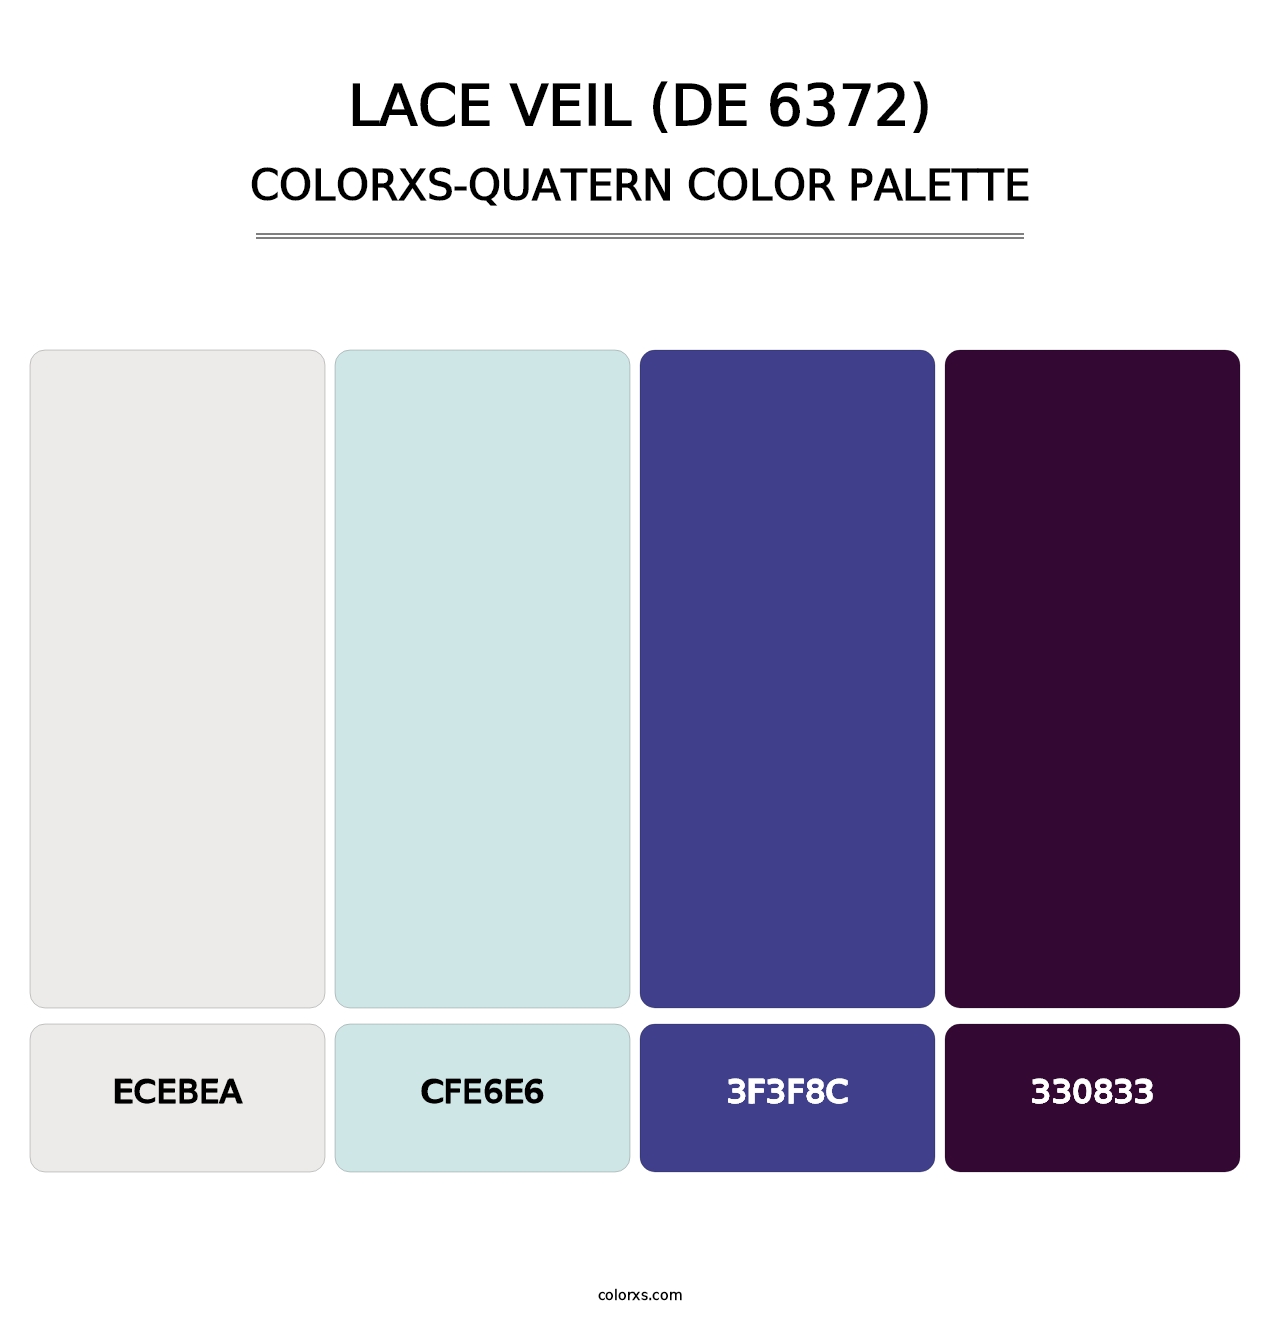 Lace Veil (DE 6372) - Colorxs Quatern Palette